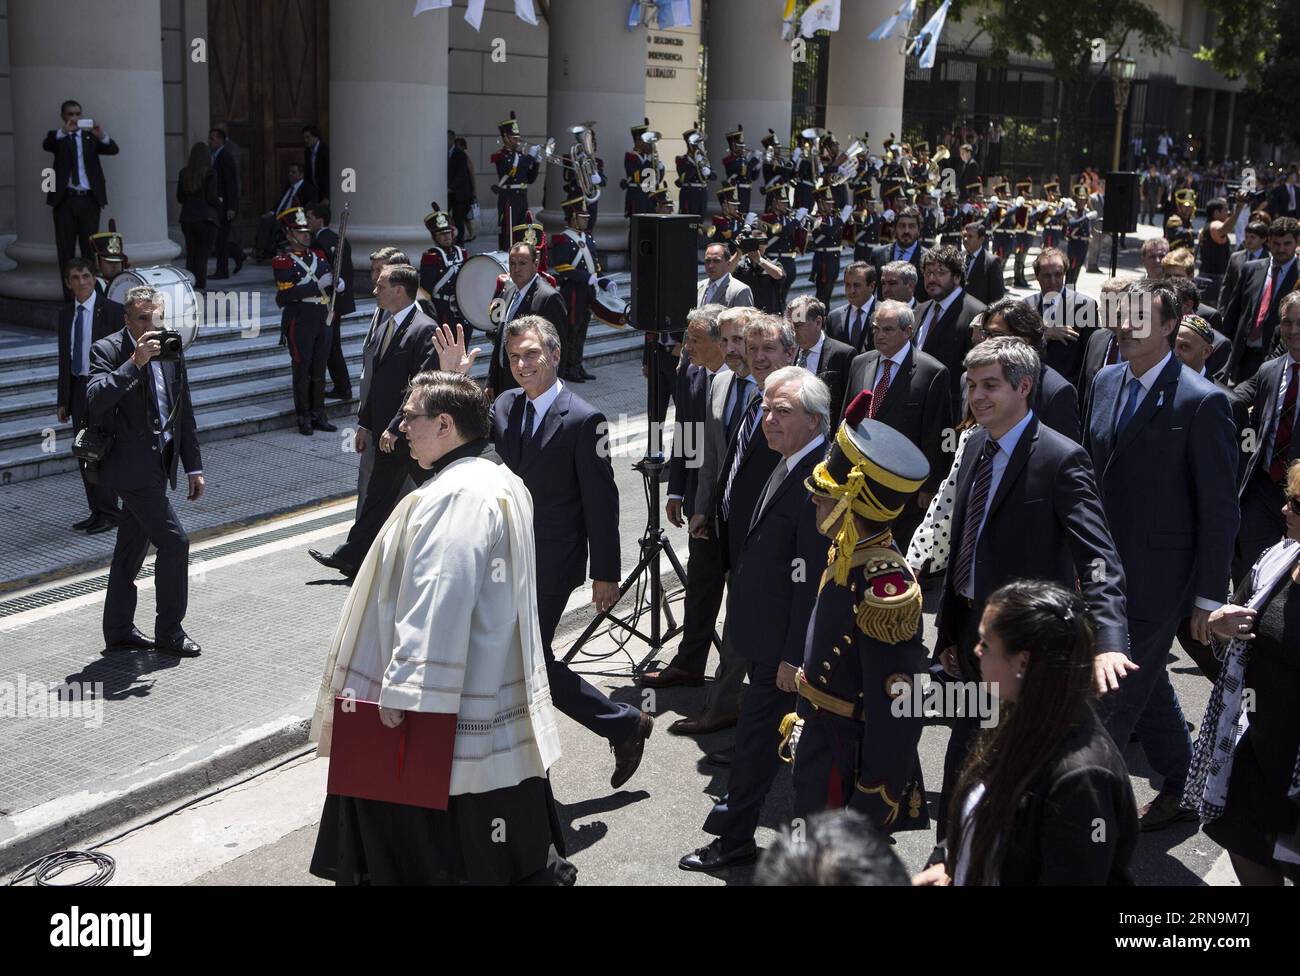 (151211) -- BUENOS AIRES, le 11 décembre 2015 -- le président argentin Mauricio Macri (C) fait signe de la vague en marchant sur l'avenue May avec son cabinet pour participer au Tedeum de la cathédrale métropolitaine de Buenos Aires, capitale de l'Argentine, le 11 décembre 2015. Selon la presse locale, Mauricio Macri a assisté vendredi au service religieux traditionnel à la cathédrale métropolitaine, le lendemain de son inauguration. Martin Zabala) (jg) (fnc) ARGENTINA-BUENOS AIRES-POLITICS-PRESIDENT e MARTINxZABALA PUBLICATIONxNOTxINxCHN 151211 Buenos Aires DEC 11 2015 Argentina S President Mauricio Macri C Waves Banque D'Images